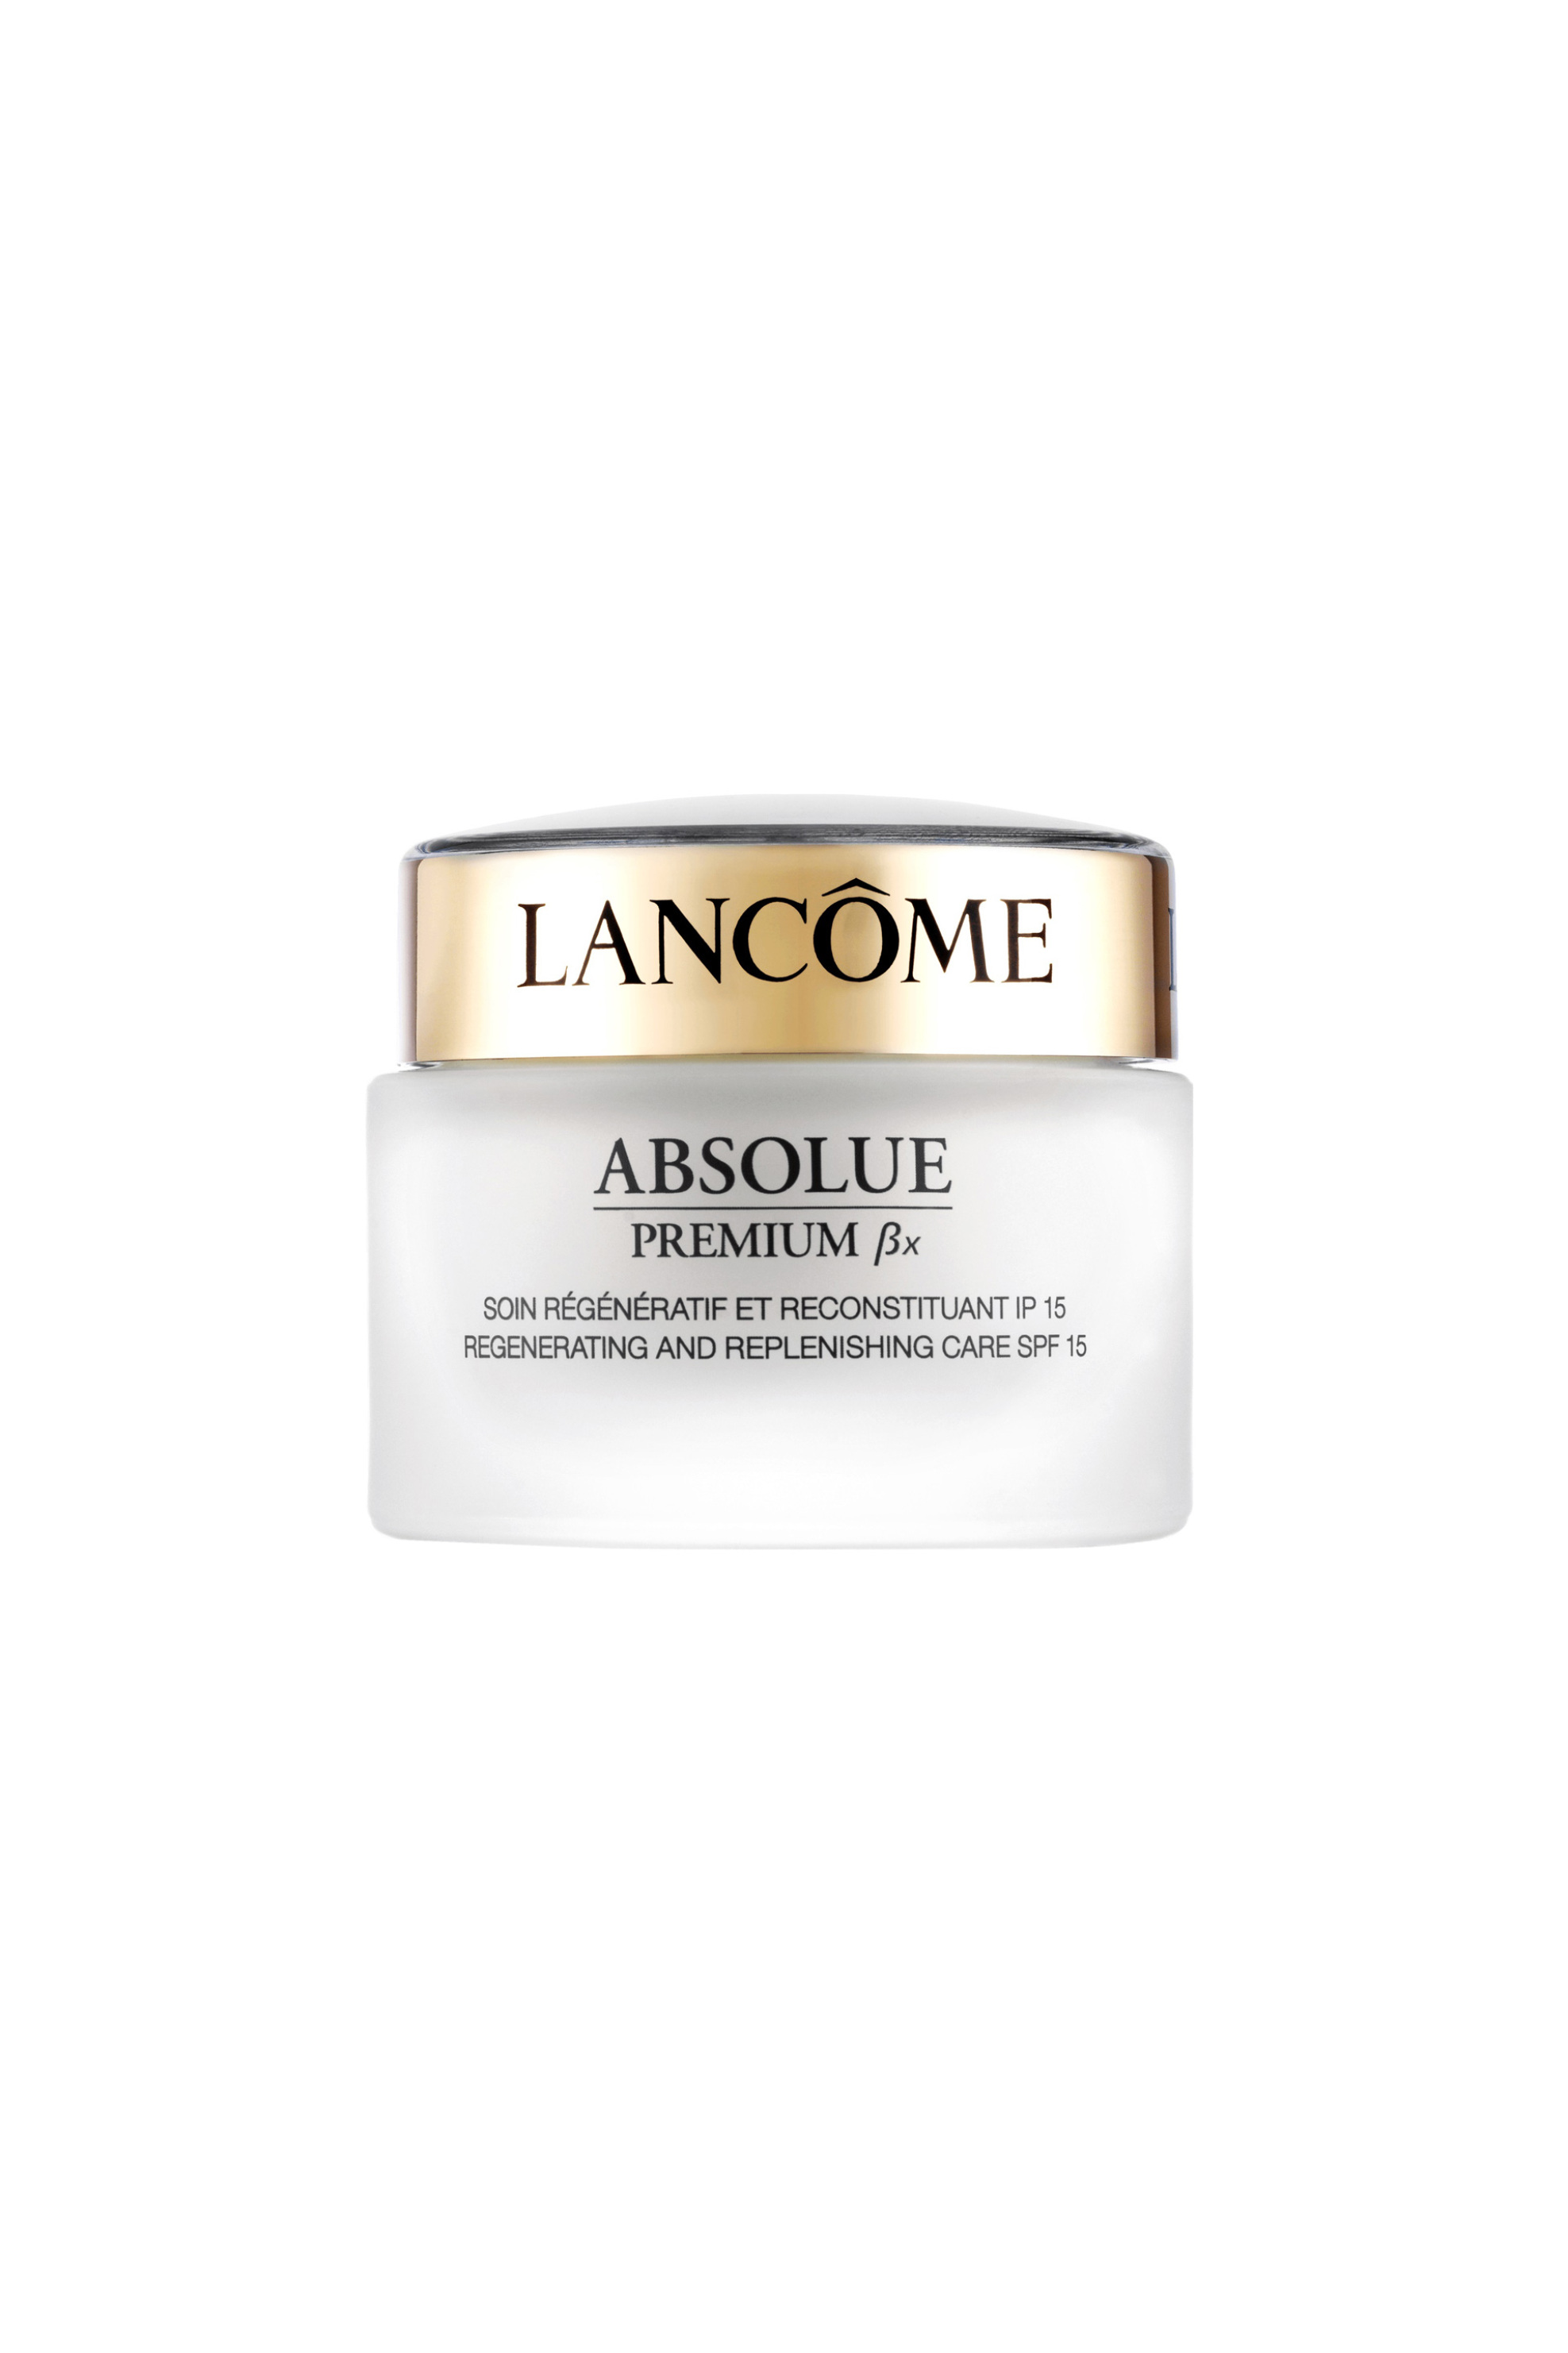 Lancôme Absolue ΒX Creme 50 ml - 3605532972640 979278502638